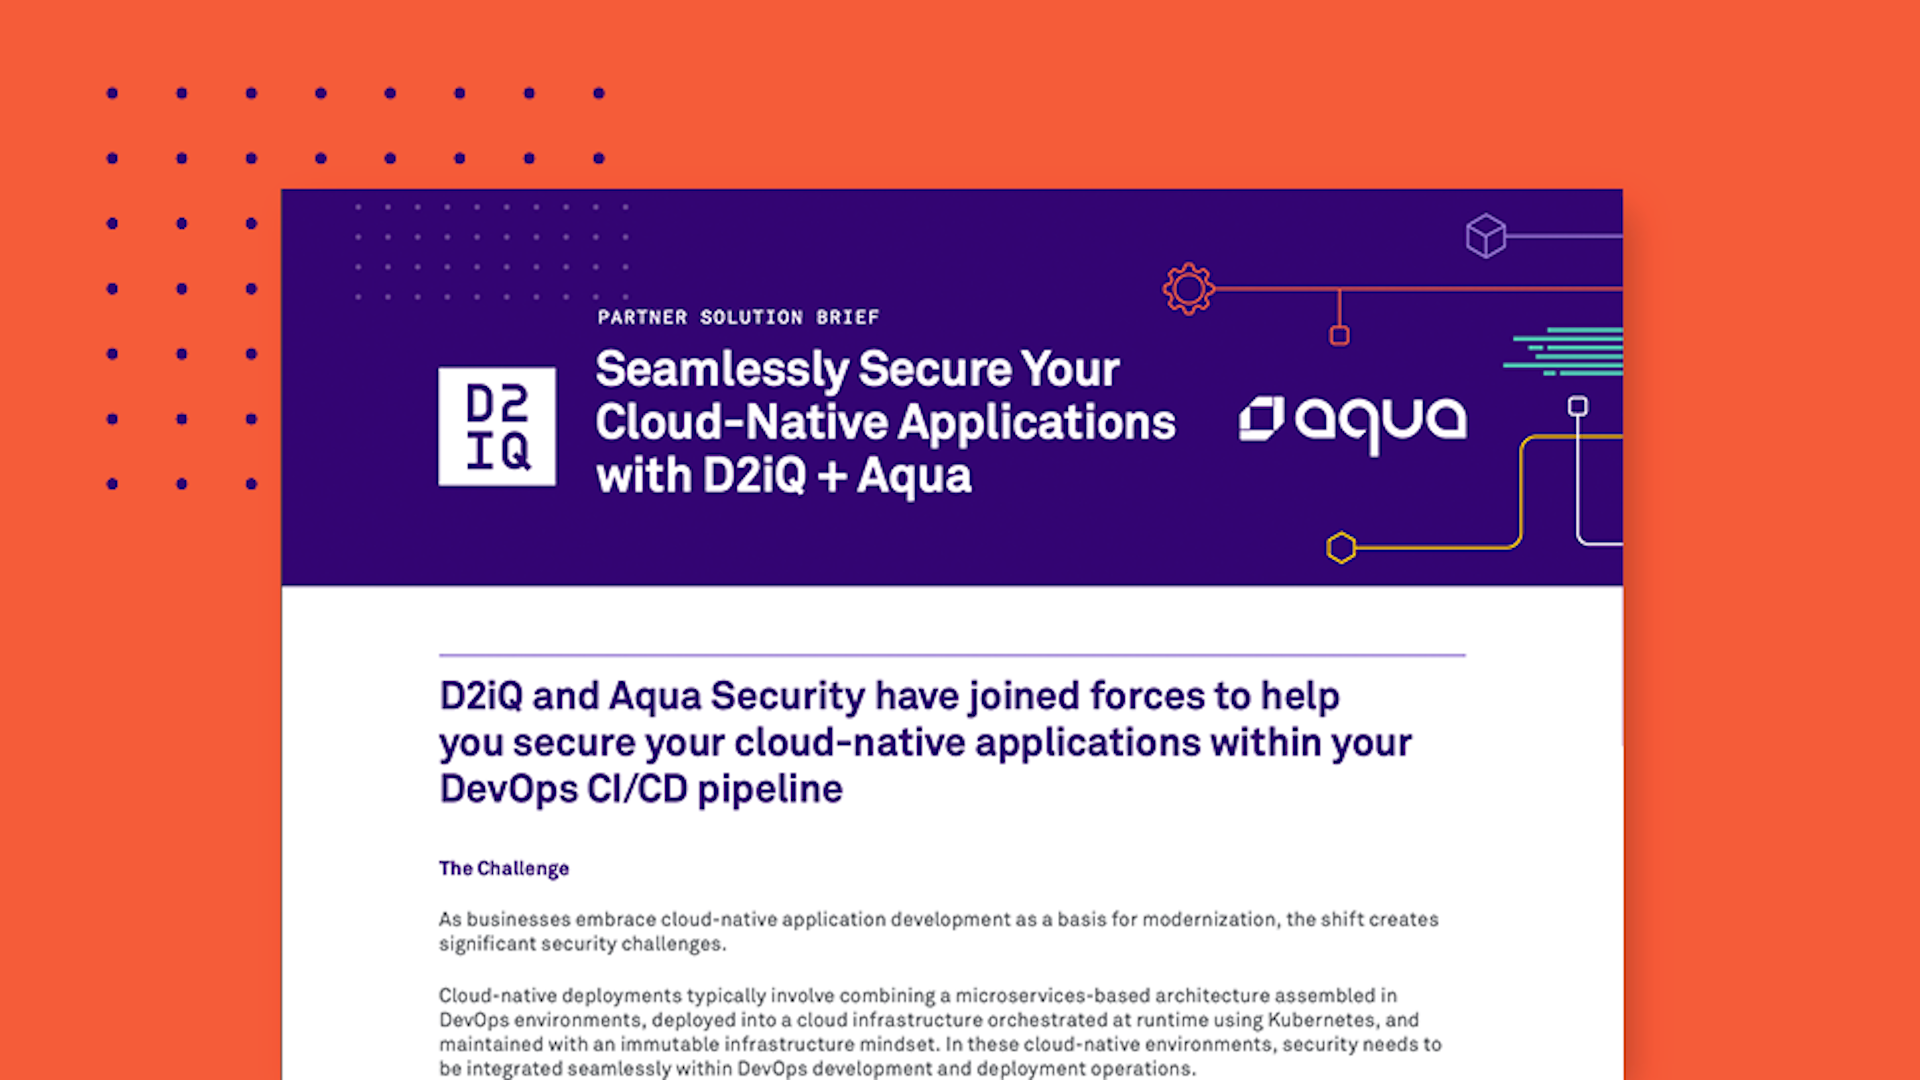 Solution Brief: D2iQ and Aqua